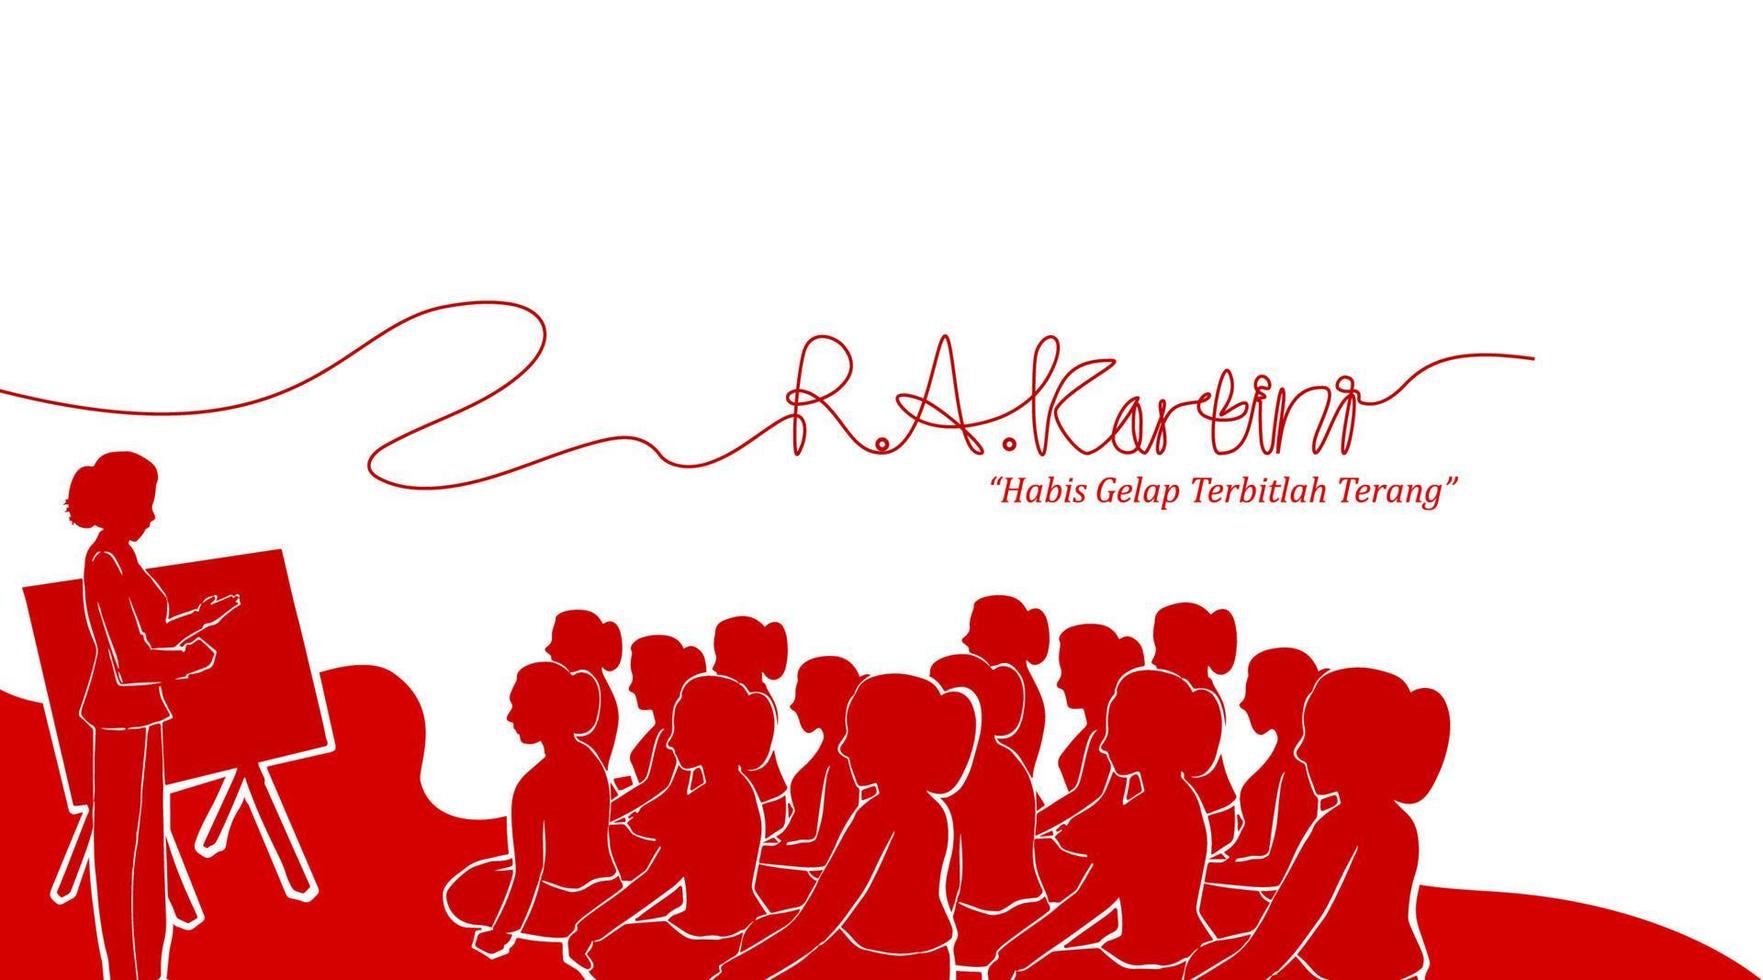 raden adjeng kartini de helden van vrouwen en mensenrecht in indonesië. vrouwen samen lesgeven banner sjabloonontwerp achtergrond - vector